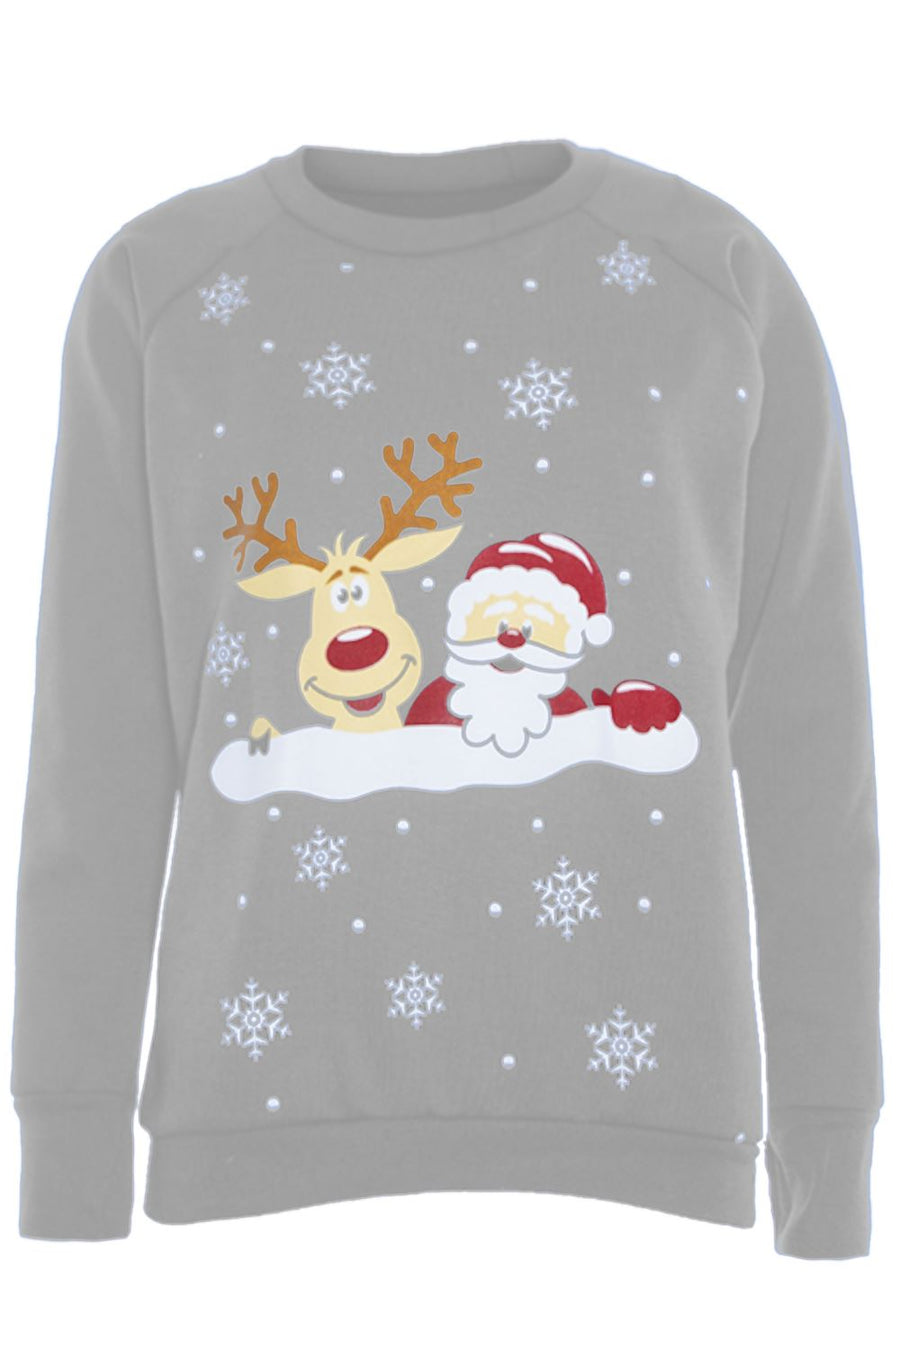 Long Sleeve Santa Print Xmas Jumper - bejealous-com